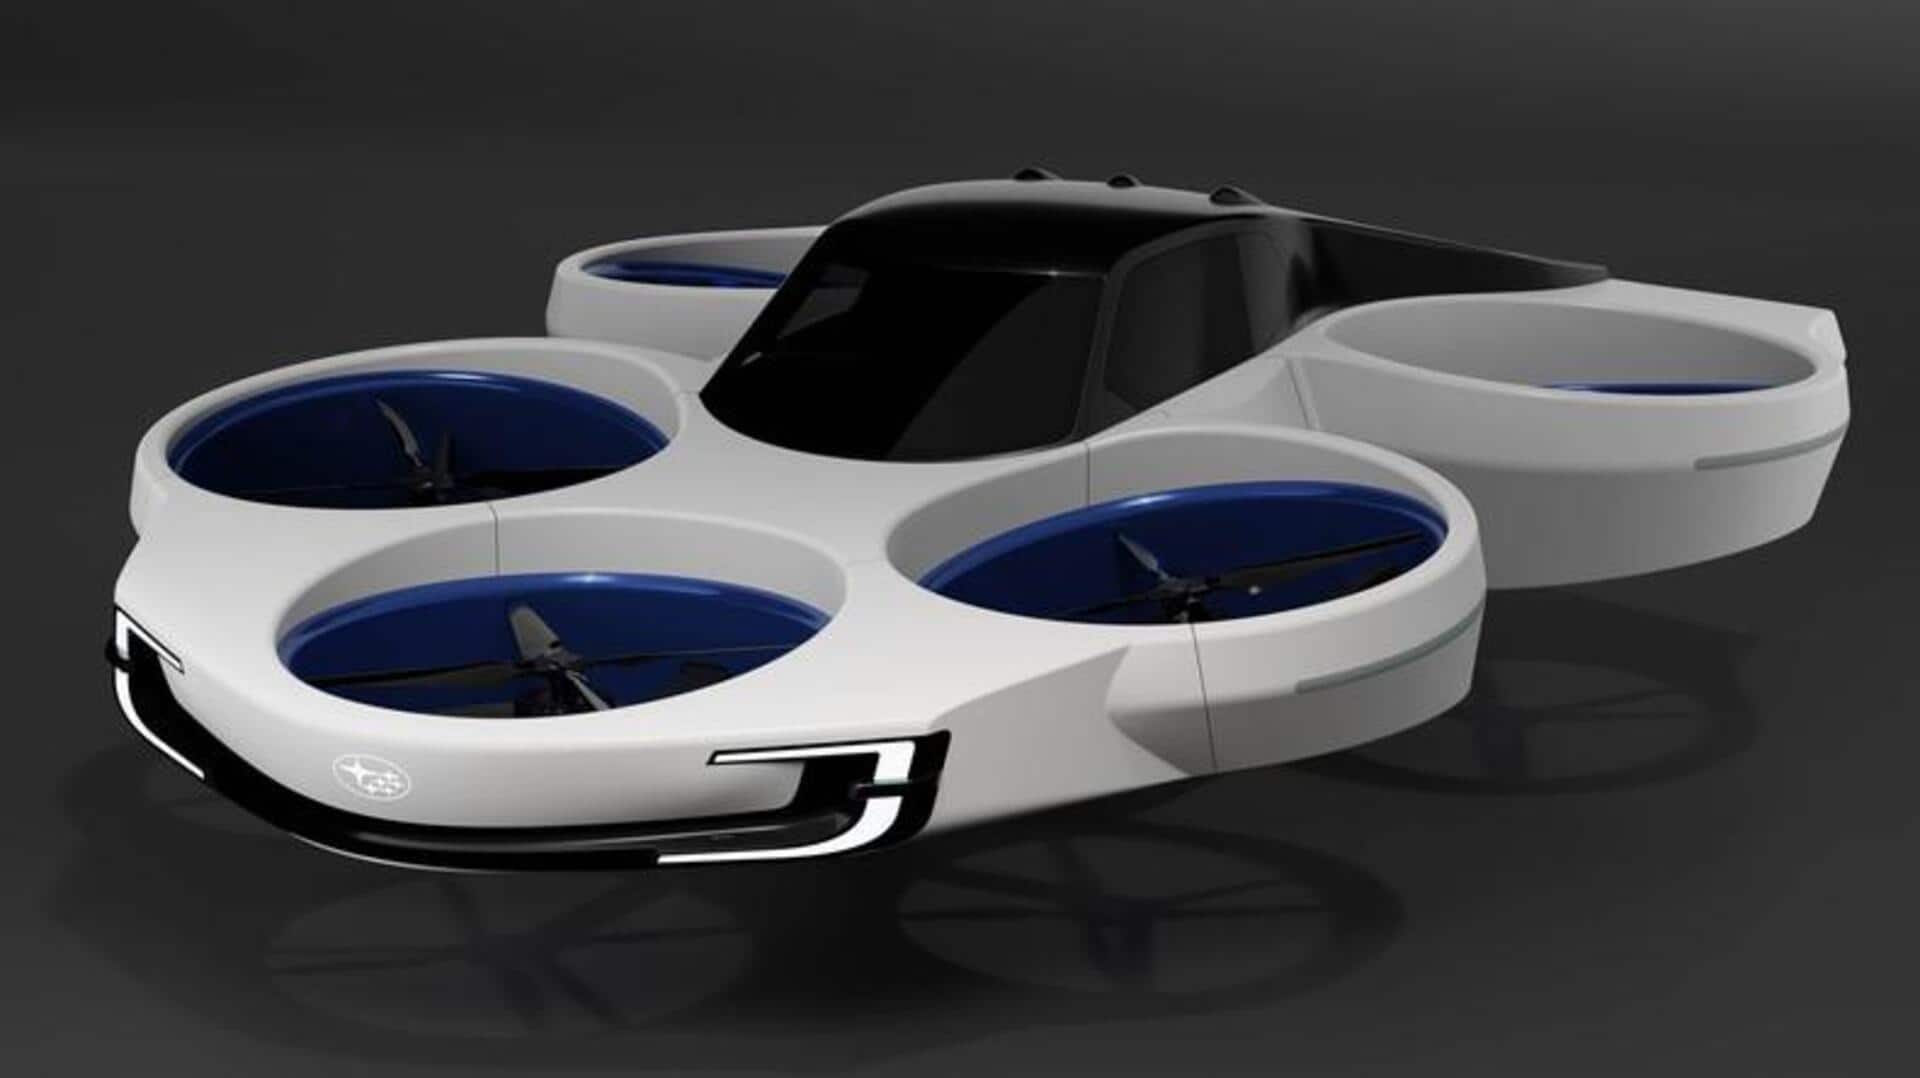 सुबारू ने प्रदर्शित की फ्लाइंग कार, आगामी इलेक्ट्रिक कारों के डिजाइन की भी दिखाई झलक 